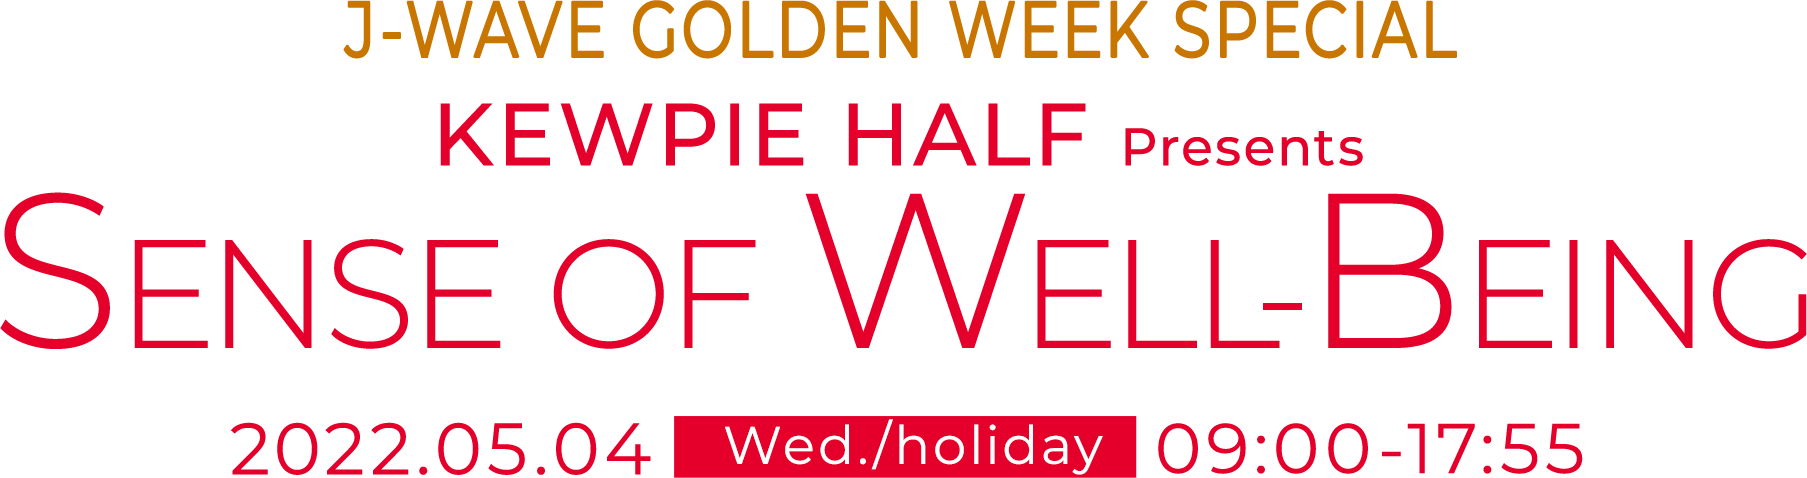 J-WAVE GOLDEN WEEK SPECIAL KEWPIE HALF Presents SENSE OF WELL-BEING 2022.05.04 Wed./holiday 09:00-17:55